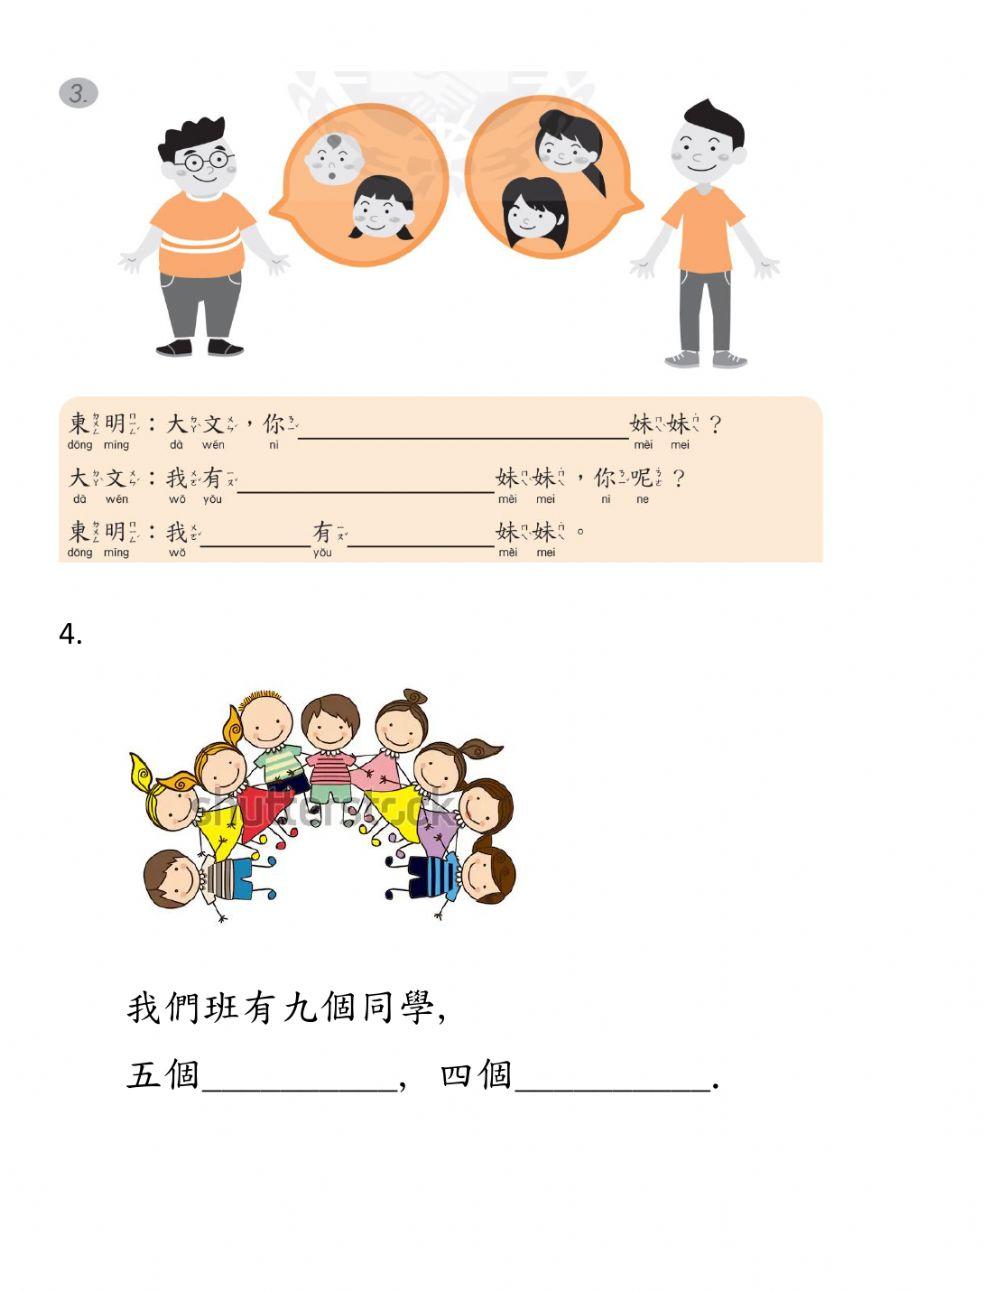 學華語向前走b1-L3